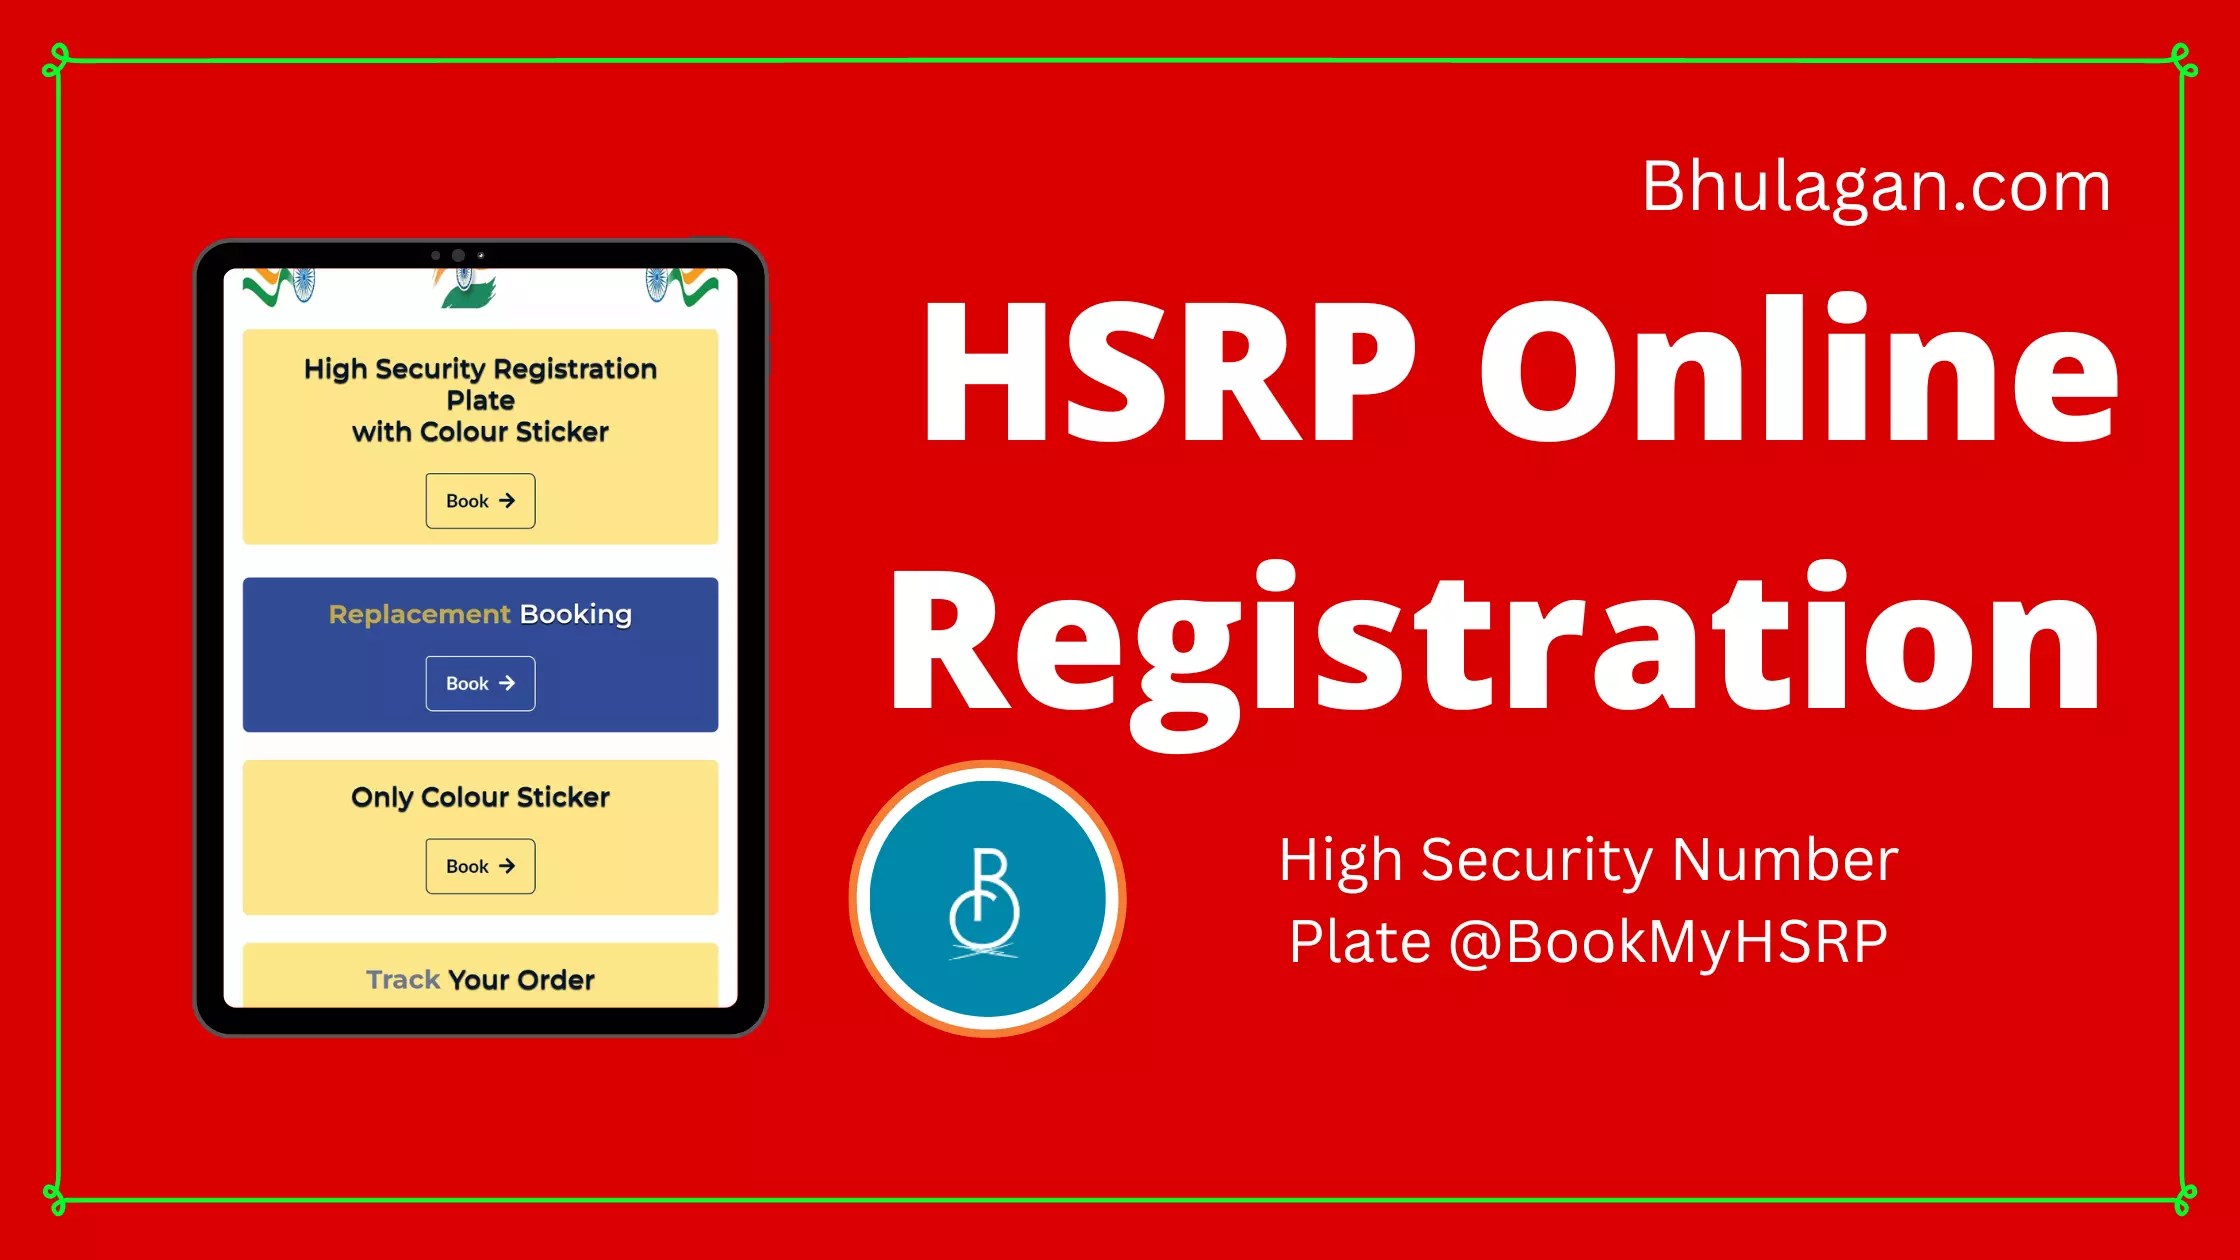 HSRP Online Registration